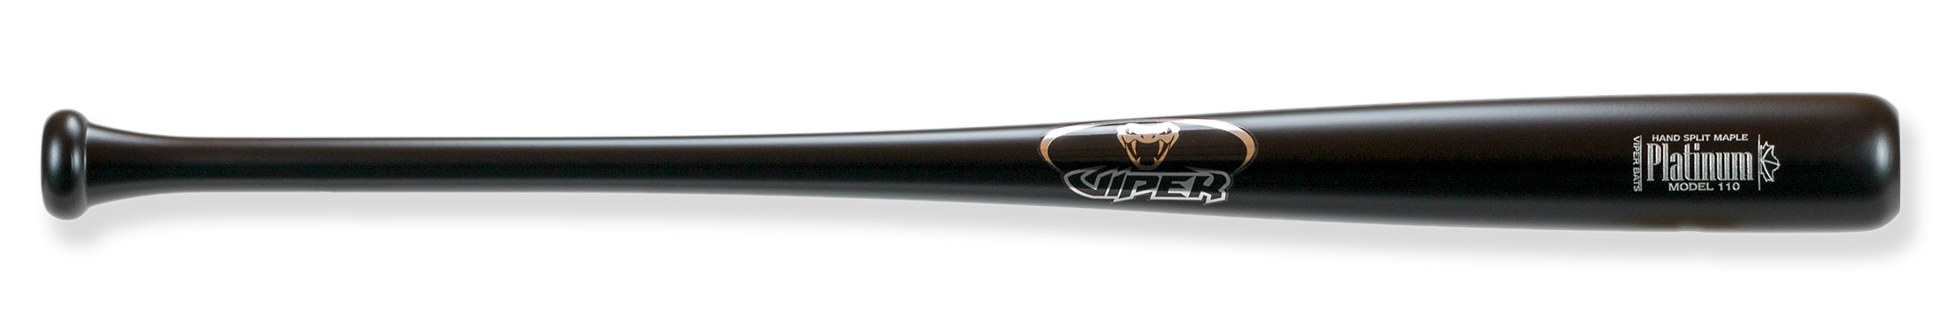 platinum 110 wood bat